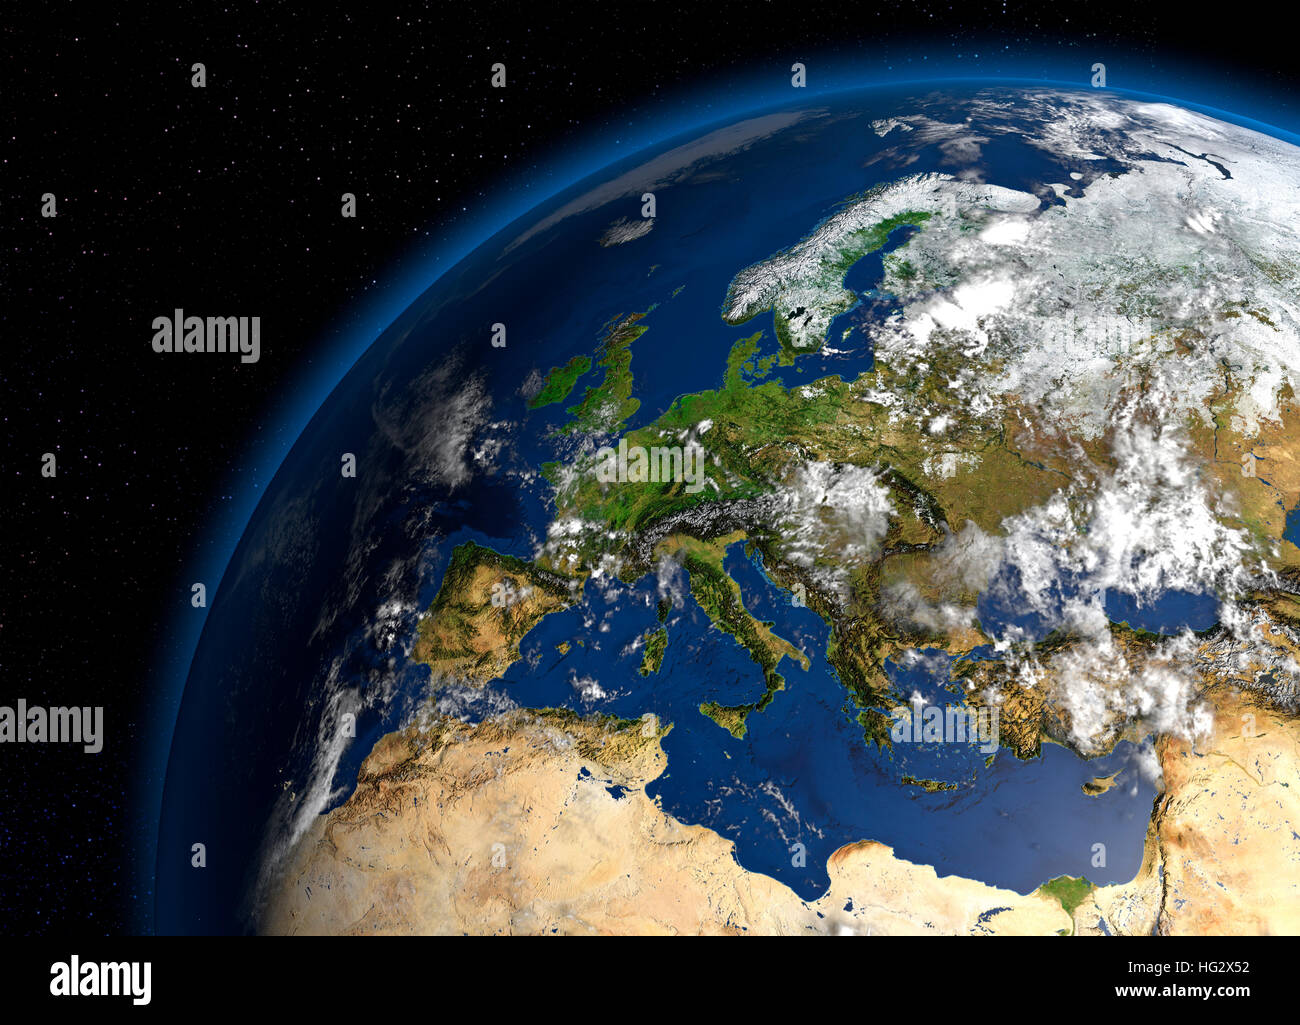 Terre vue de l'espace montrant l'Europe. Illustration numérique réaliste y compris carte relief hill d'une ombre de terrain. Veuillez crédit Nasa. Banque D'Images